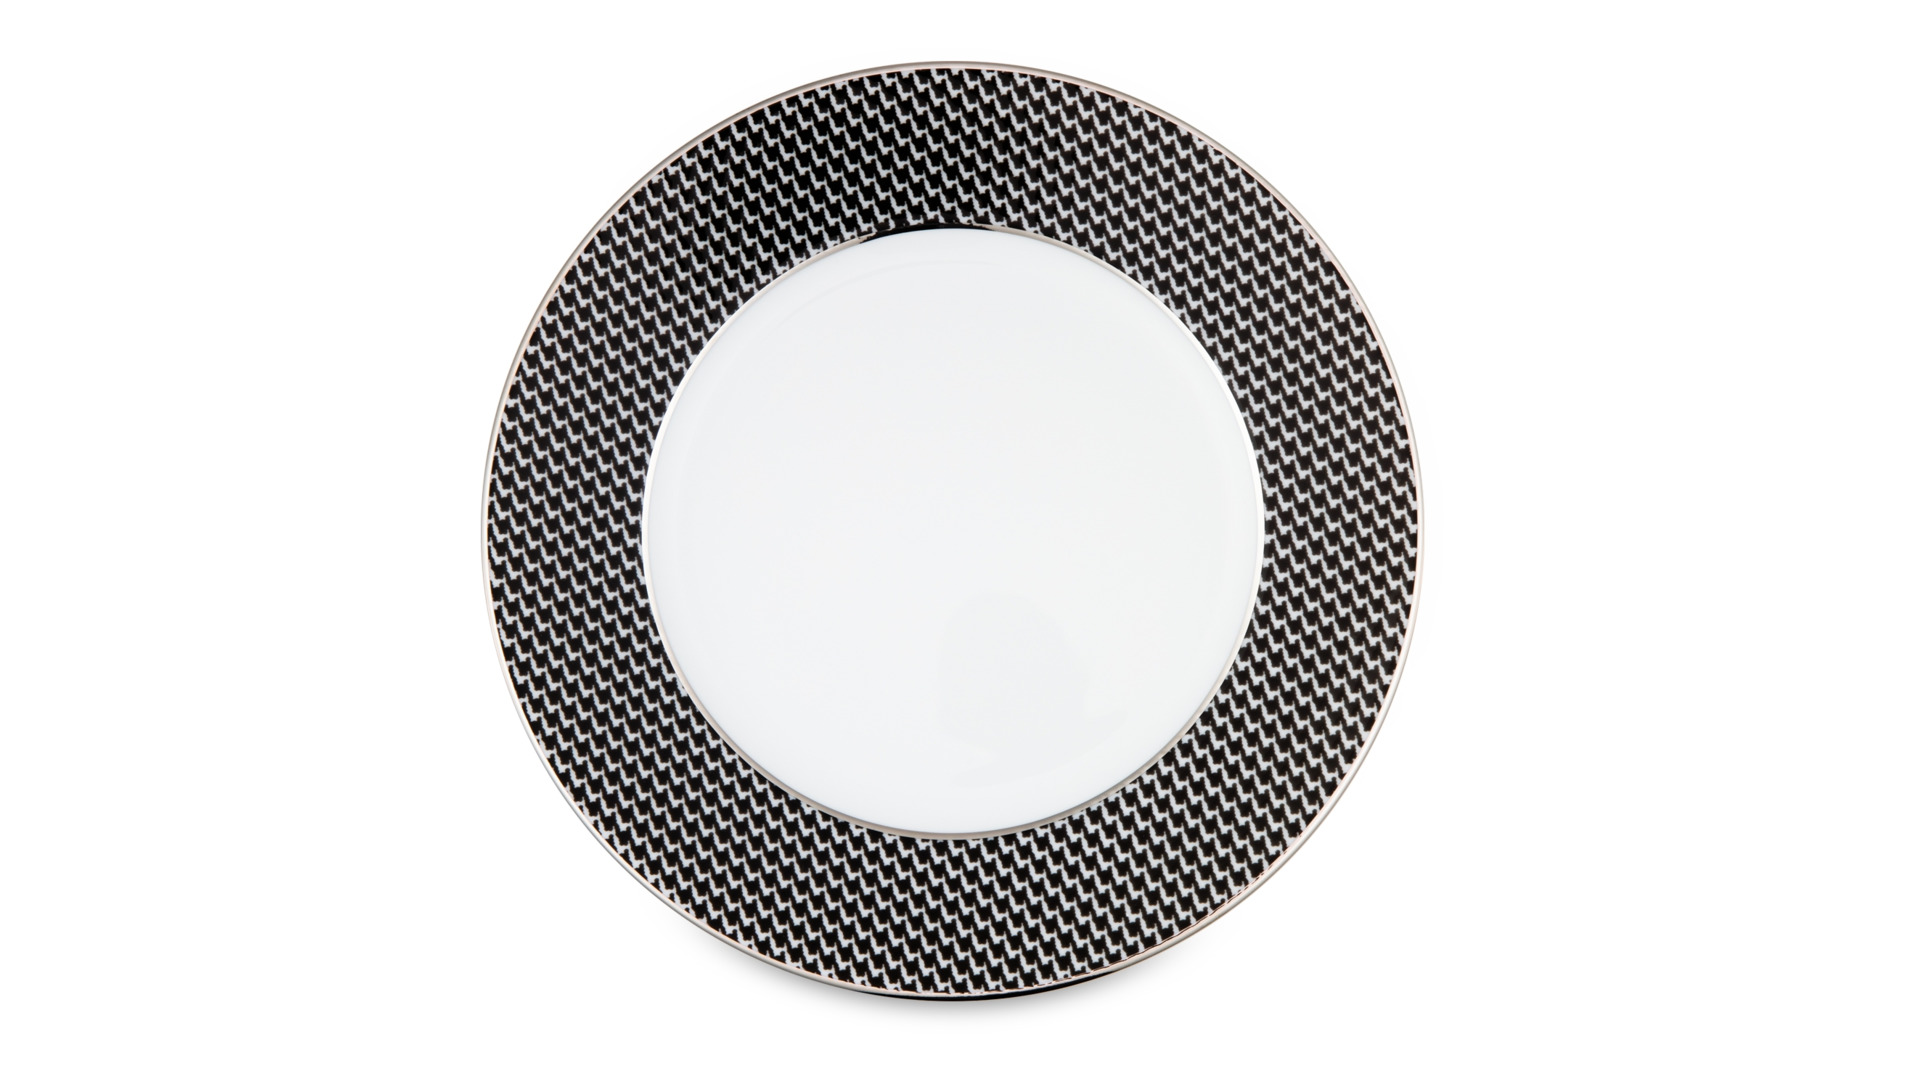 Тарелка закусочная Legle Гусиная лапка 22,5 см, фарфор, черная